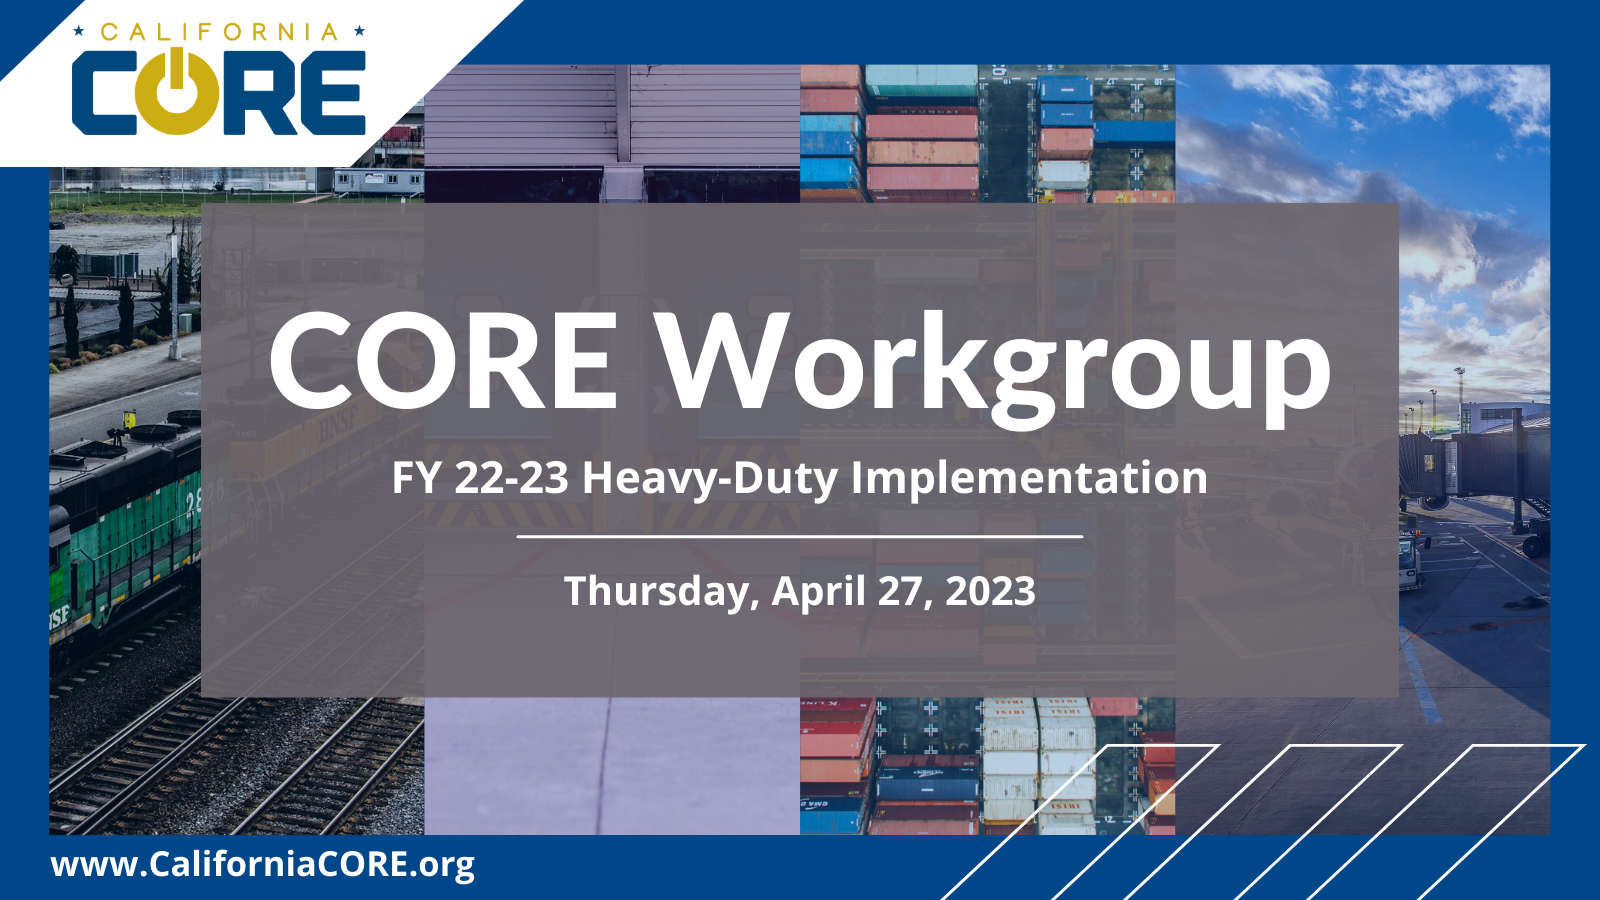 CORE FY 22-23 Heavy-Duty Workgroup 4/27/2023 Flyer